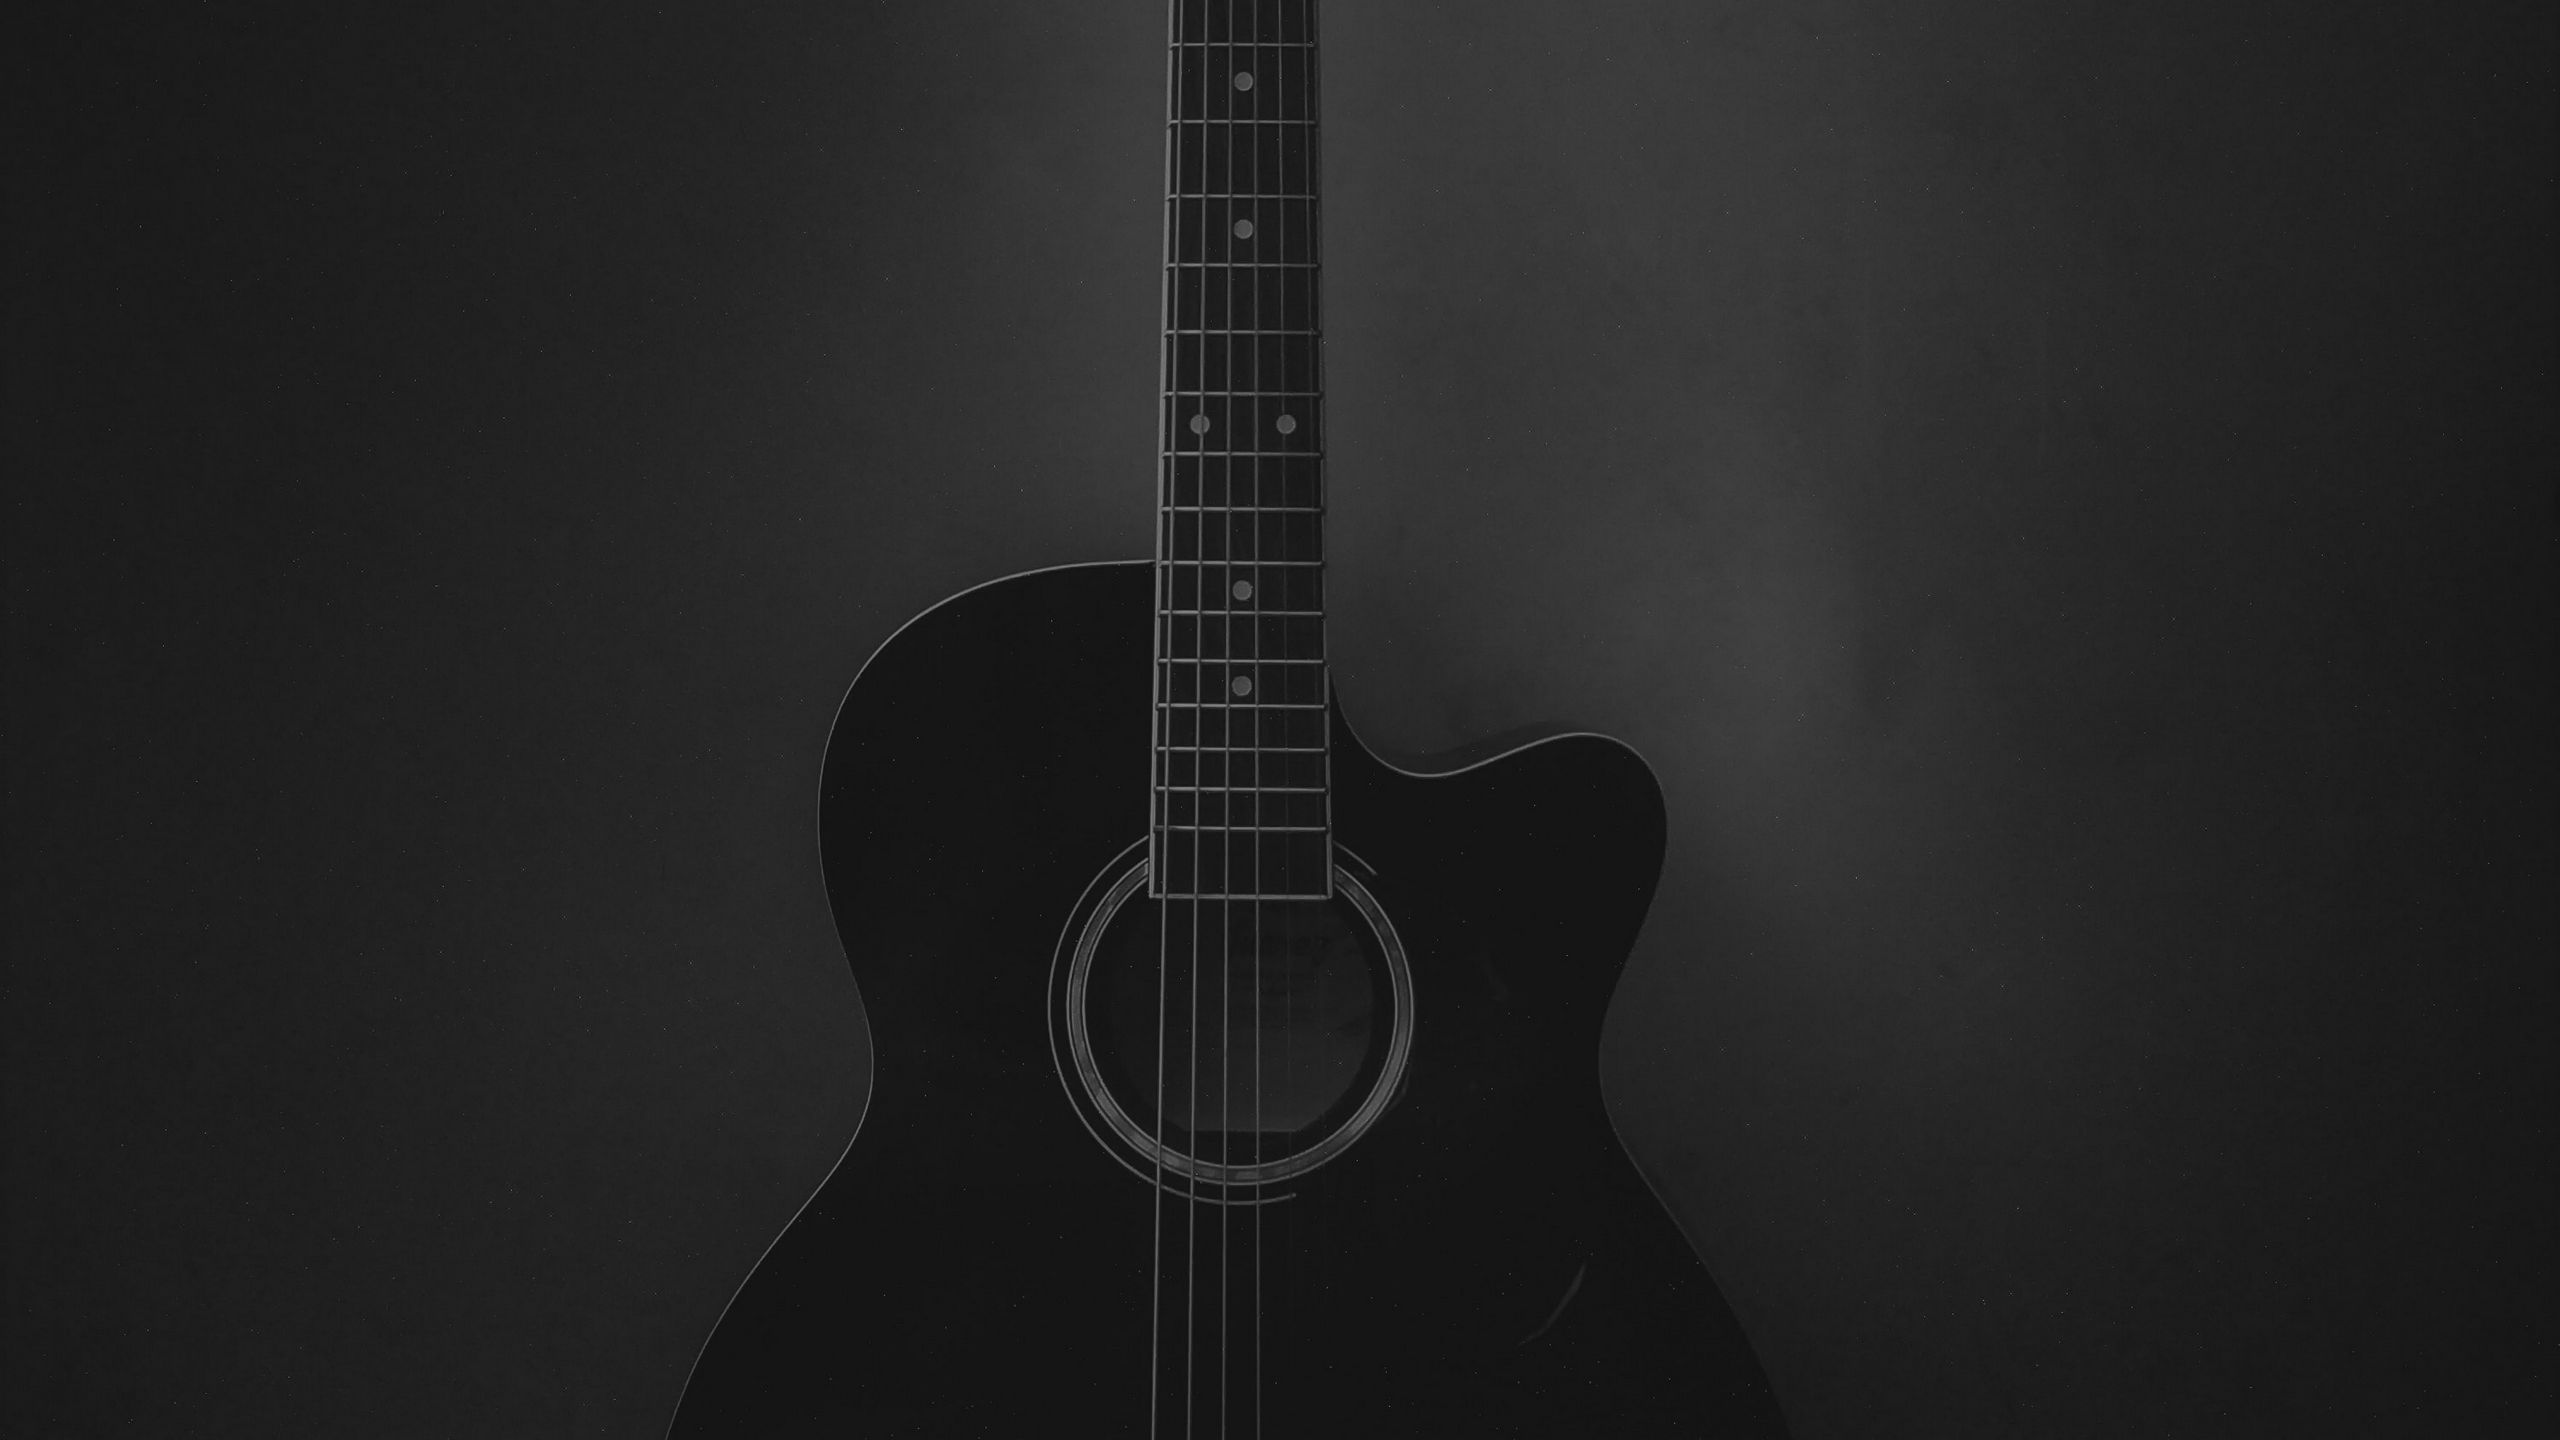 Download wallpaper 2560x1440 acoustic guitar, guitar, musical ...